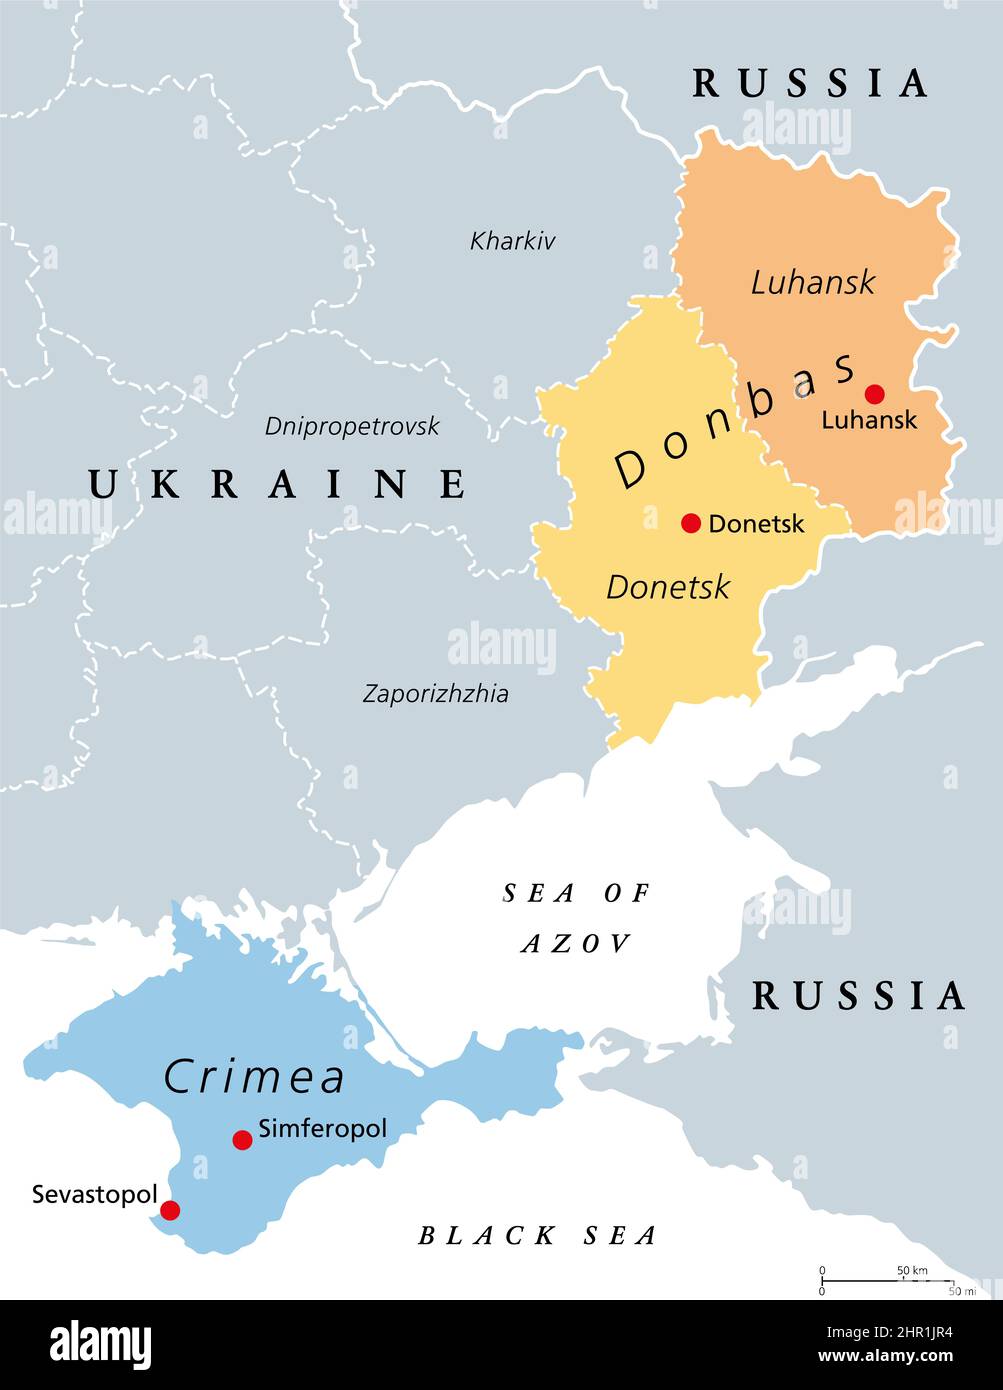 Région du Donbass et Crimée, Ukraine carte politique. Les zones contestées la péninsule de Crimée sur la côte de la mer Noire, et la région de Donbass formée par Luhansk. Banque D'Images